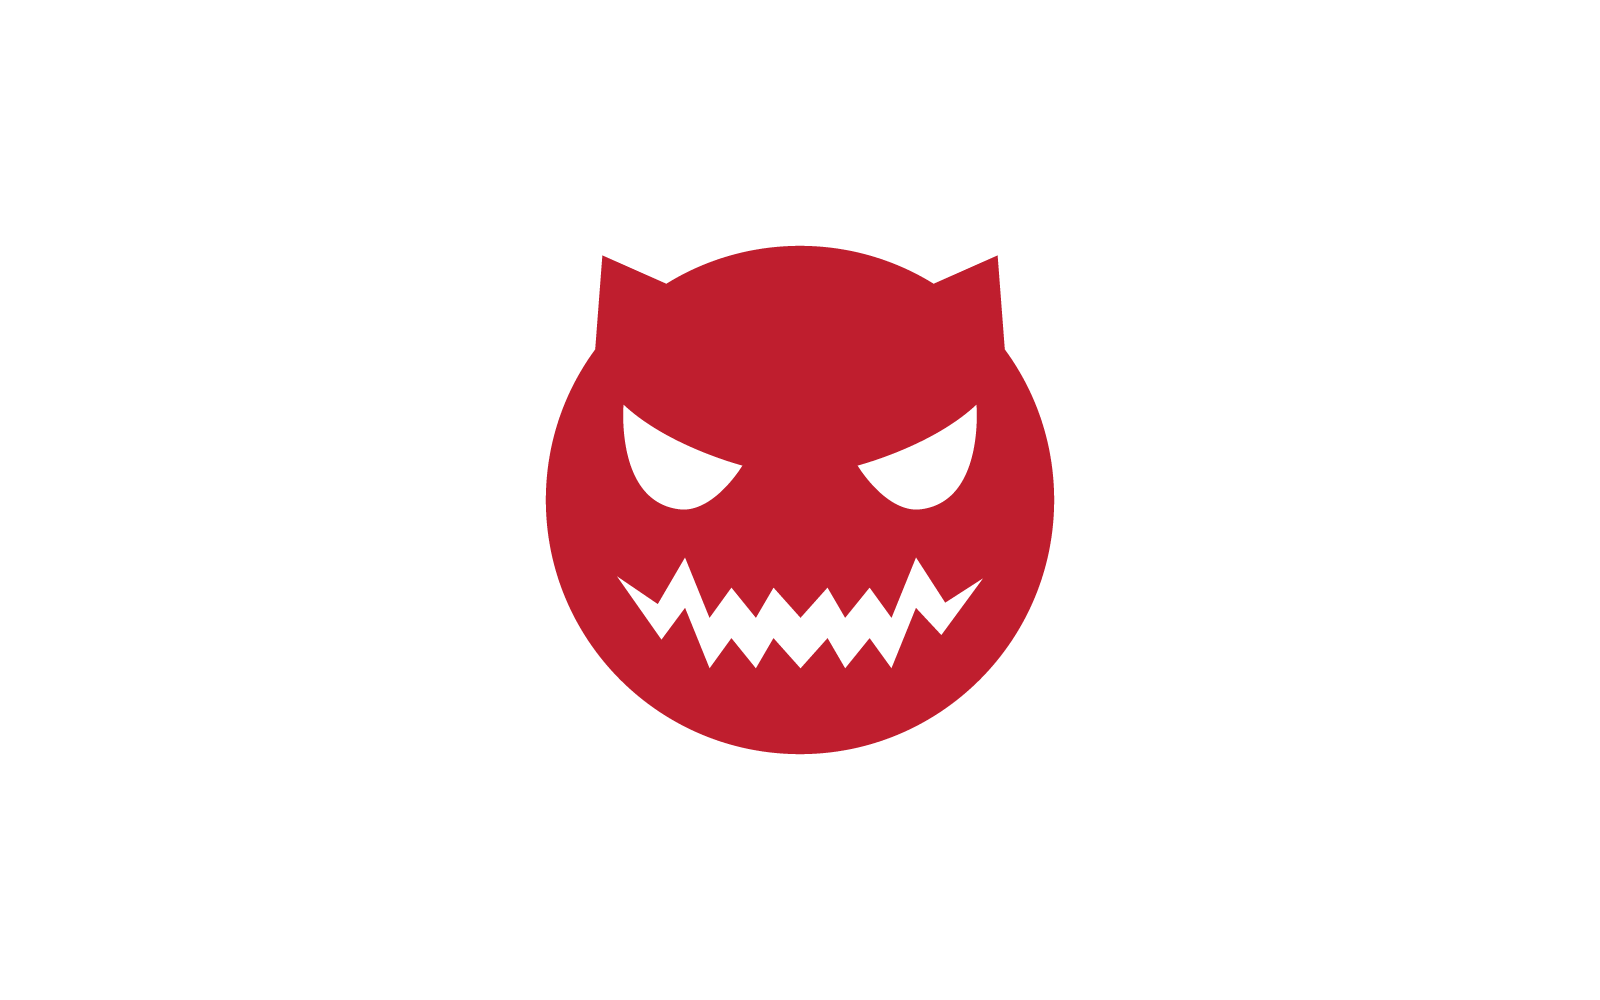 Devil logo ilustration vector design template